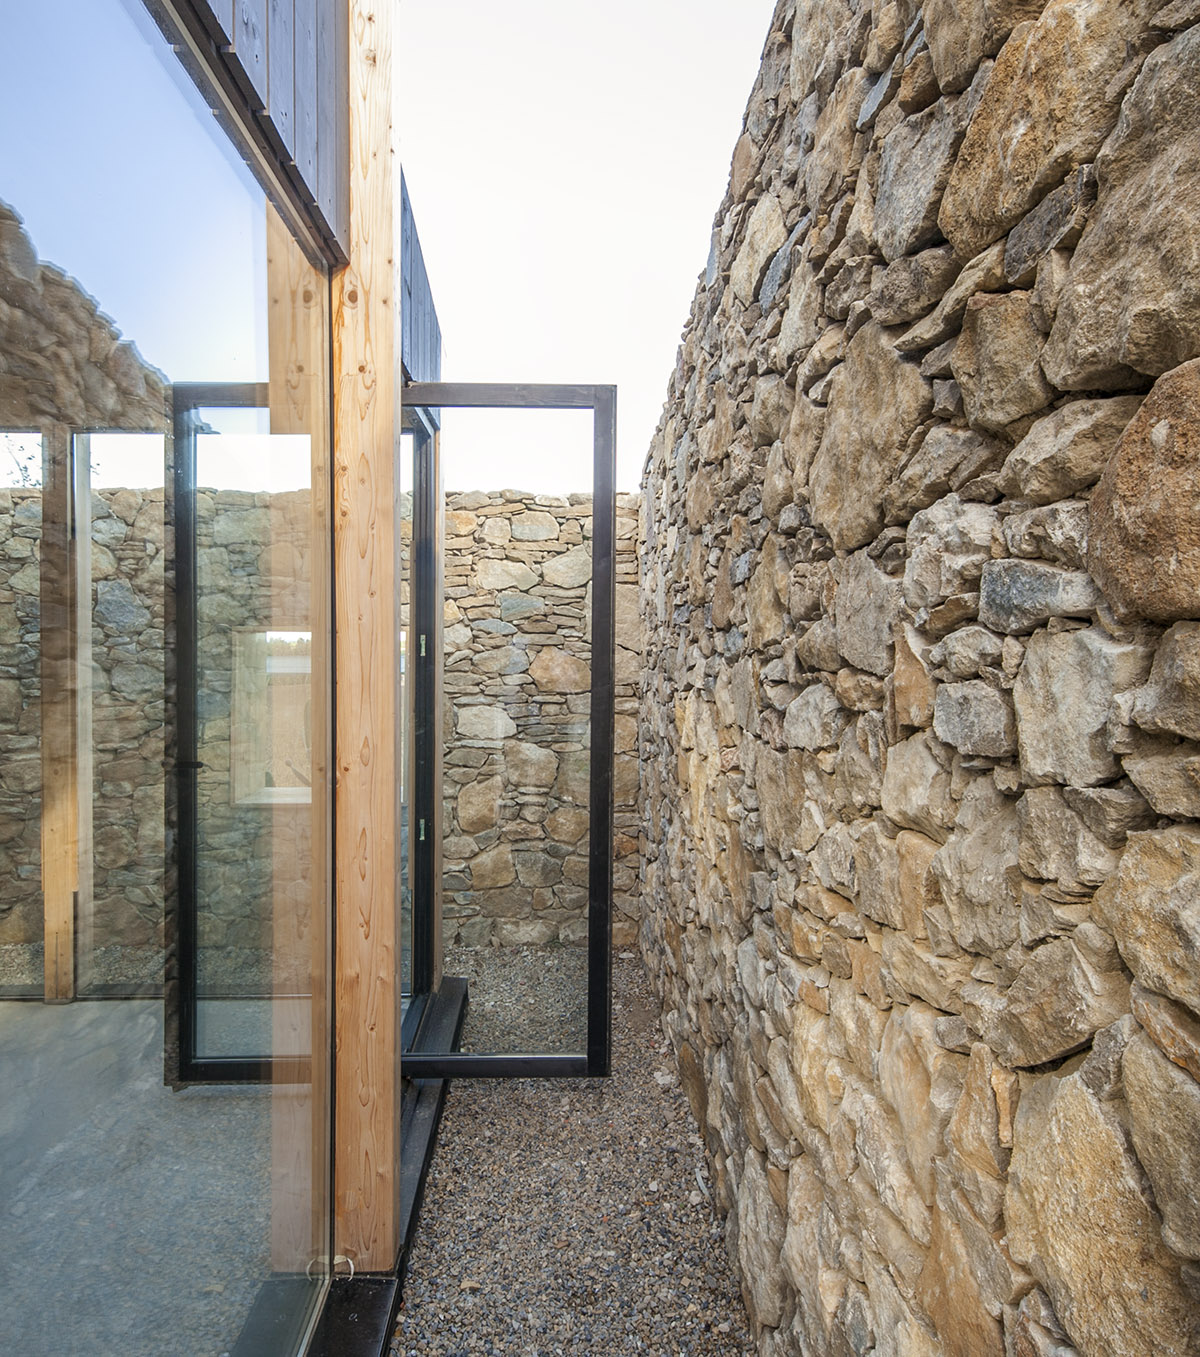 Agora Arquitectura скрывает этот небольшой дом для выходных за старой каменной стеной в Испании. 